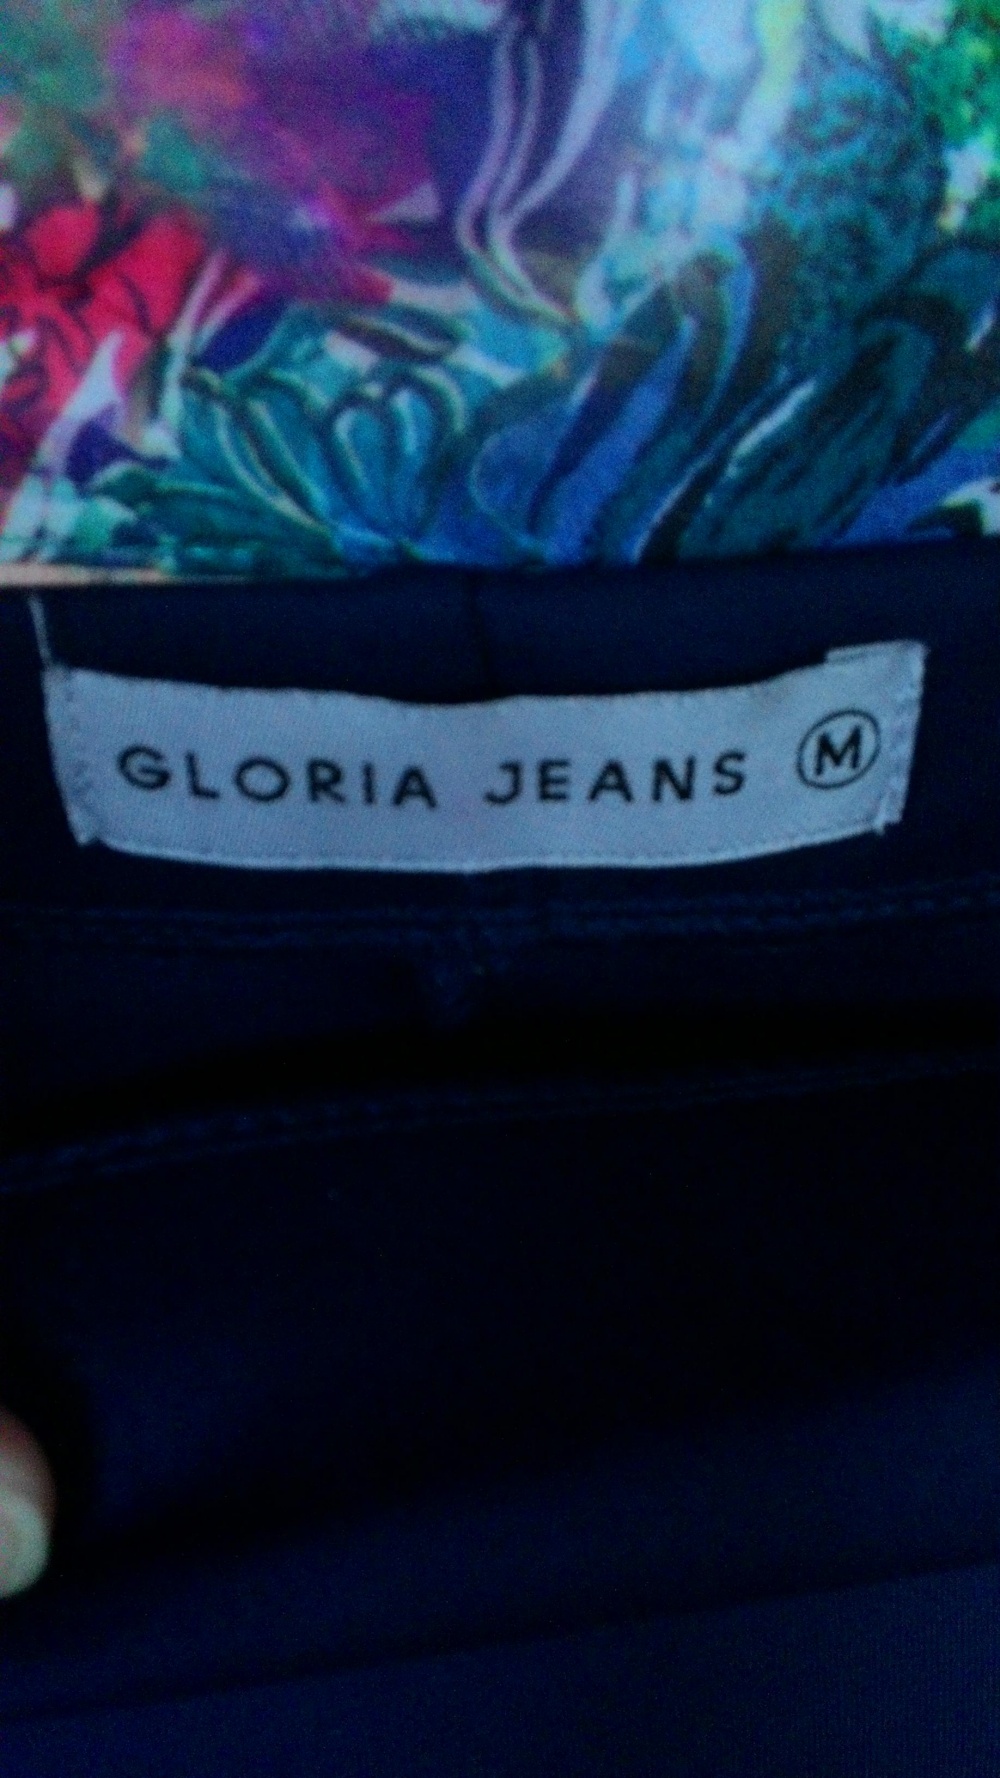 Сет из блузки Gepur и юбки Gloria geans, 44-46 (М)